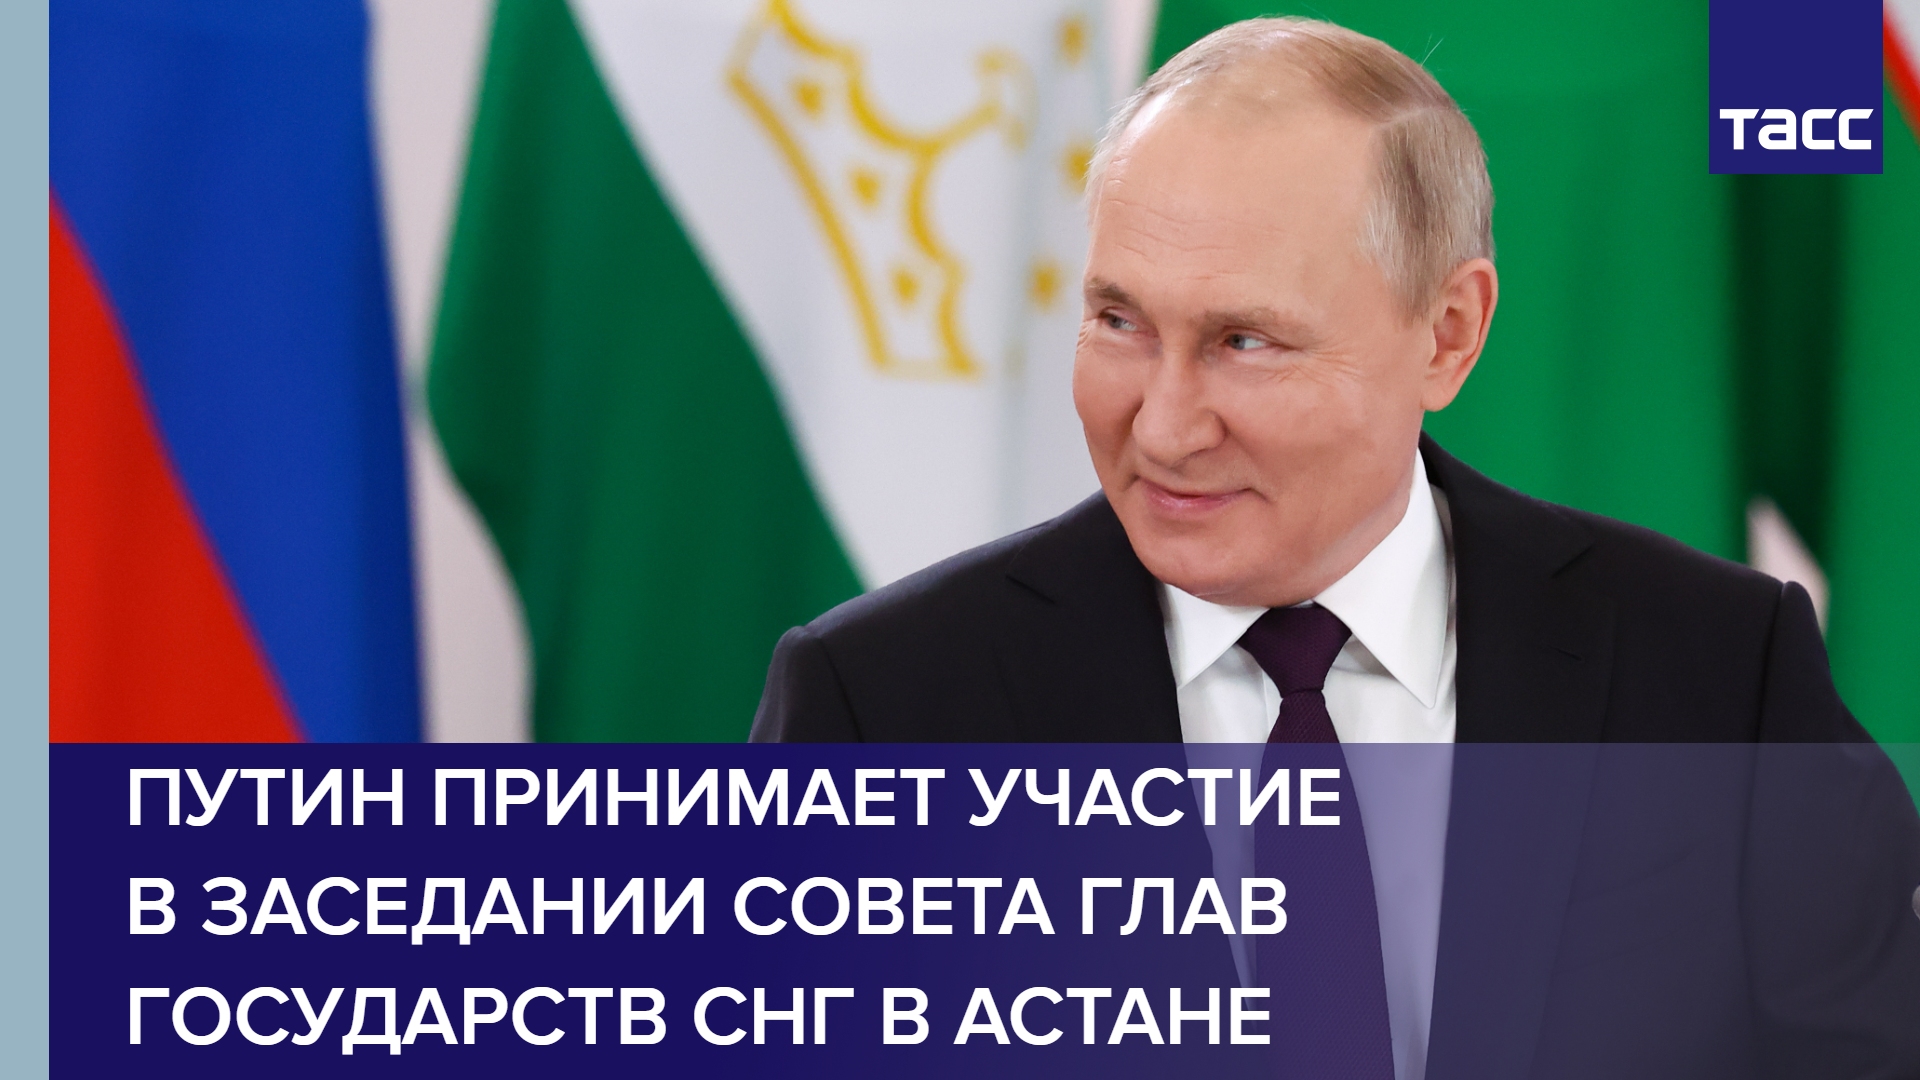 Путин принимает участие в заседании Совета глав государств СНГ в Астане